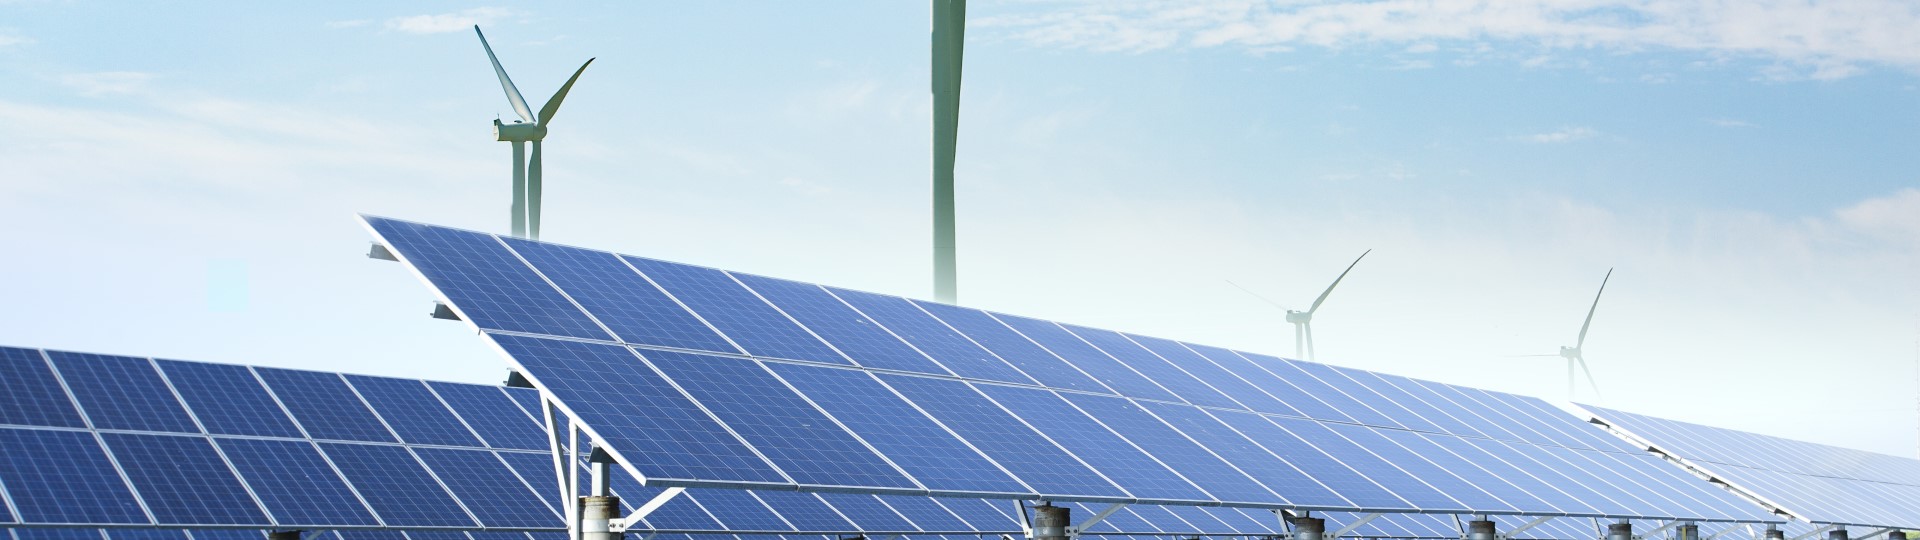 4 ways c i energy buyers use renewable electricity